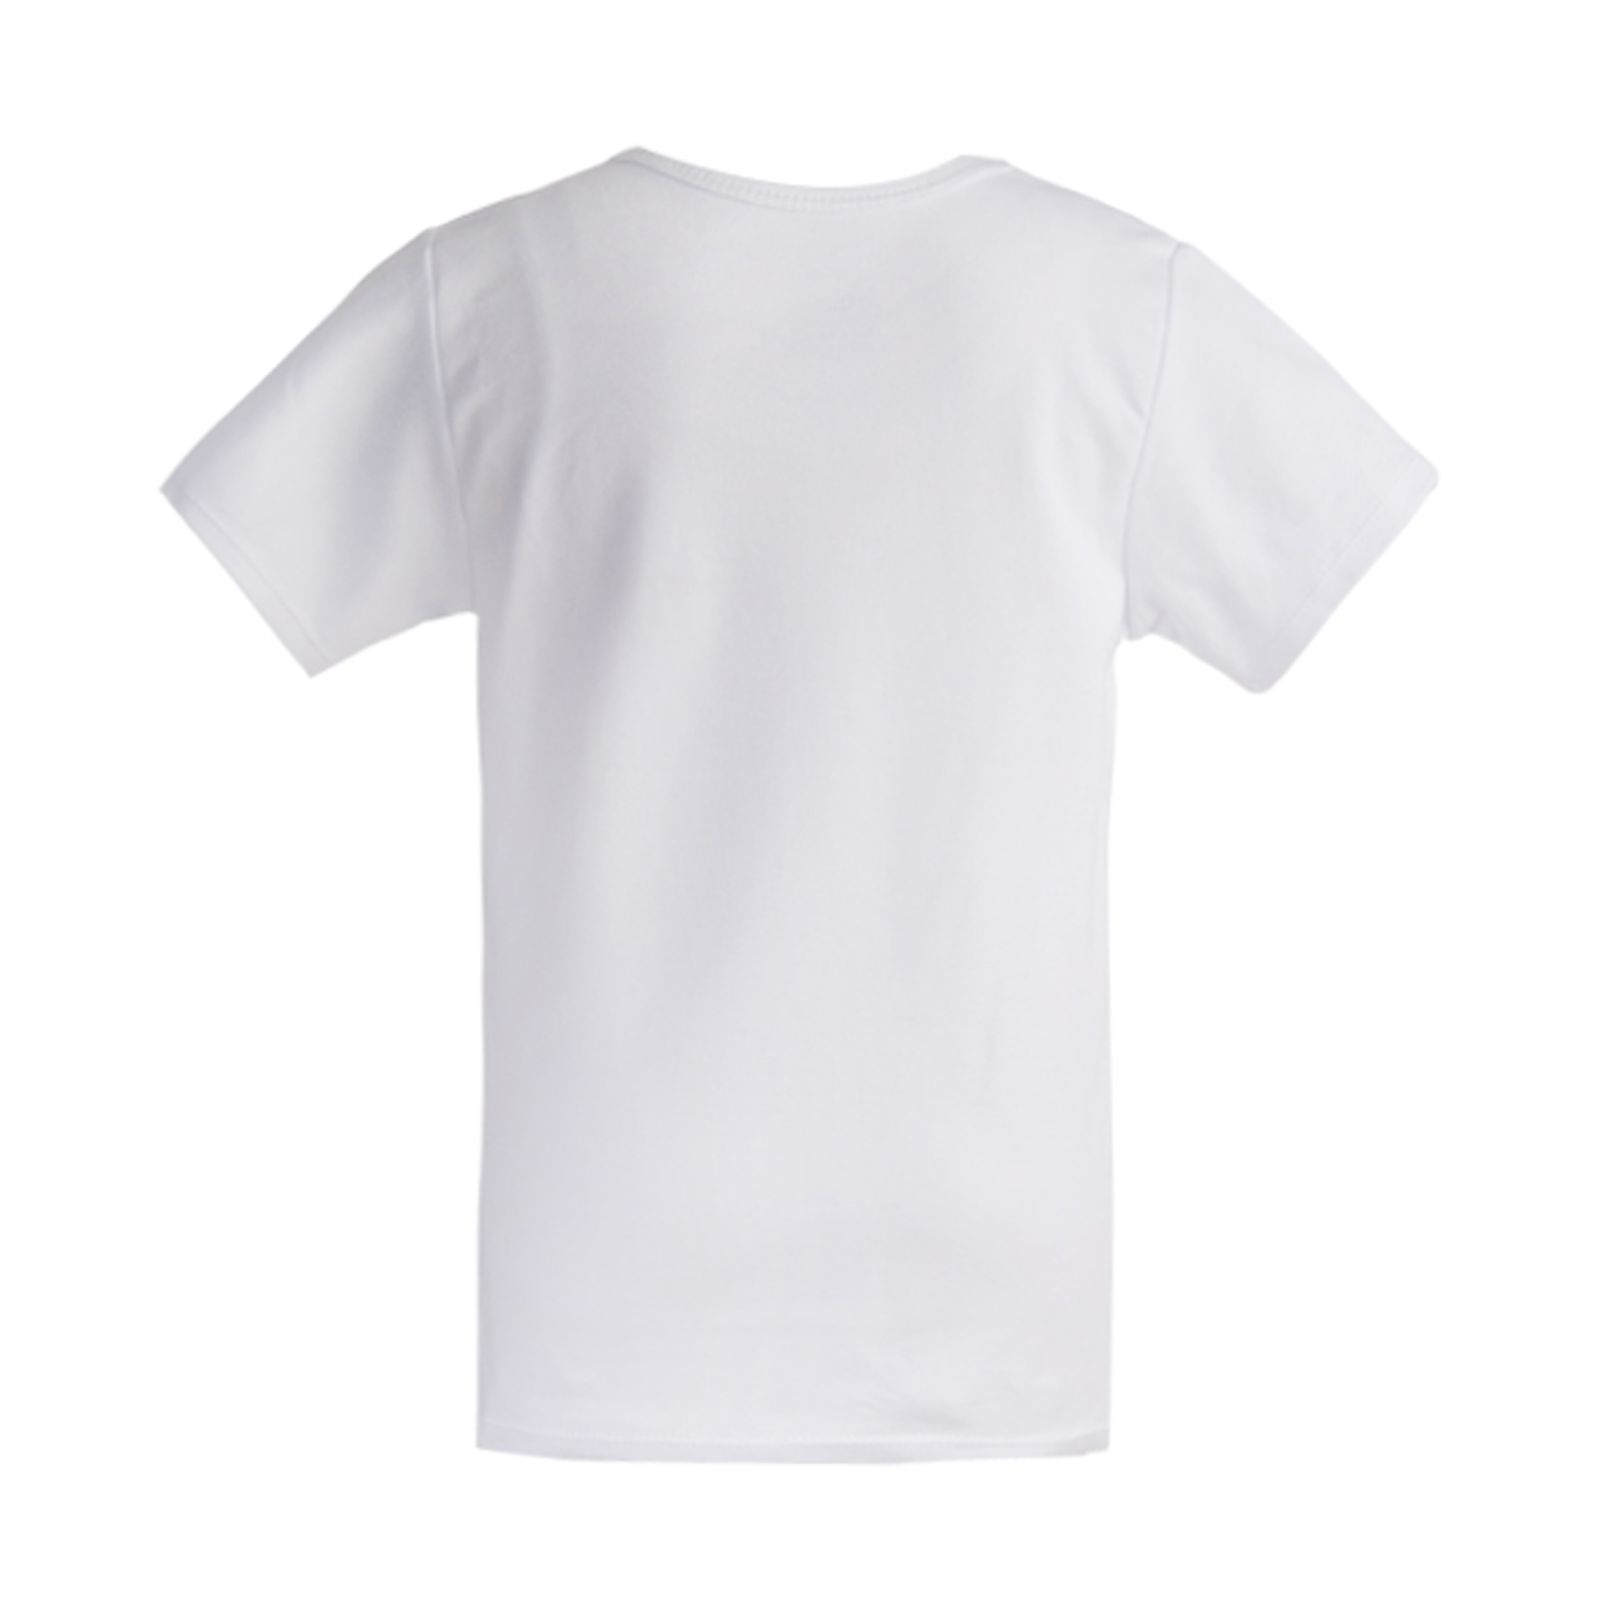  تی شرت آستین کوتاه نوزادی آدمک مدل sun کد 02 -  - 6